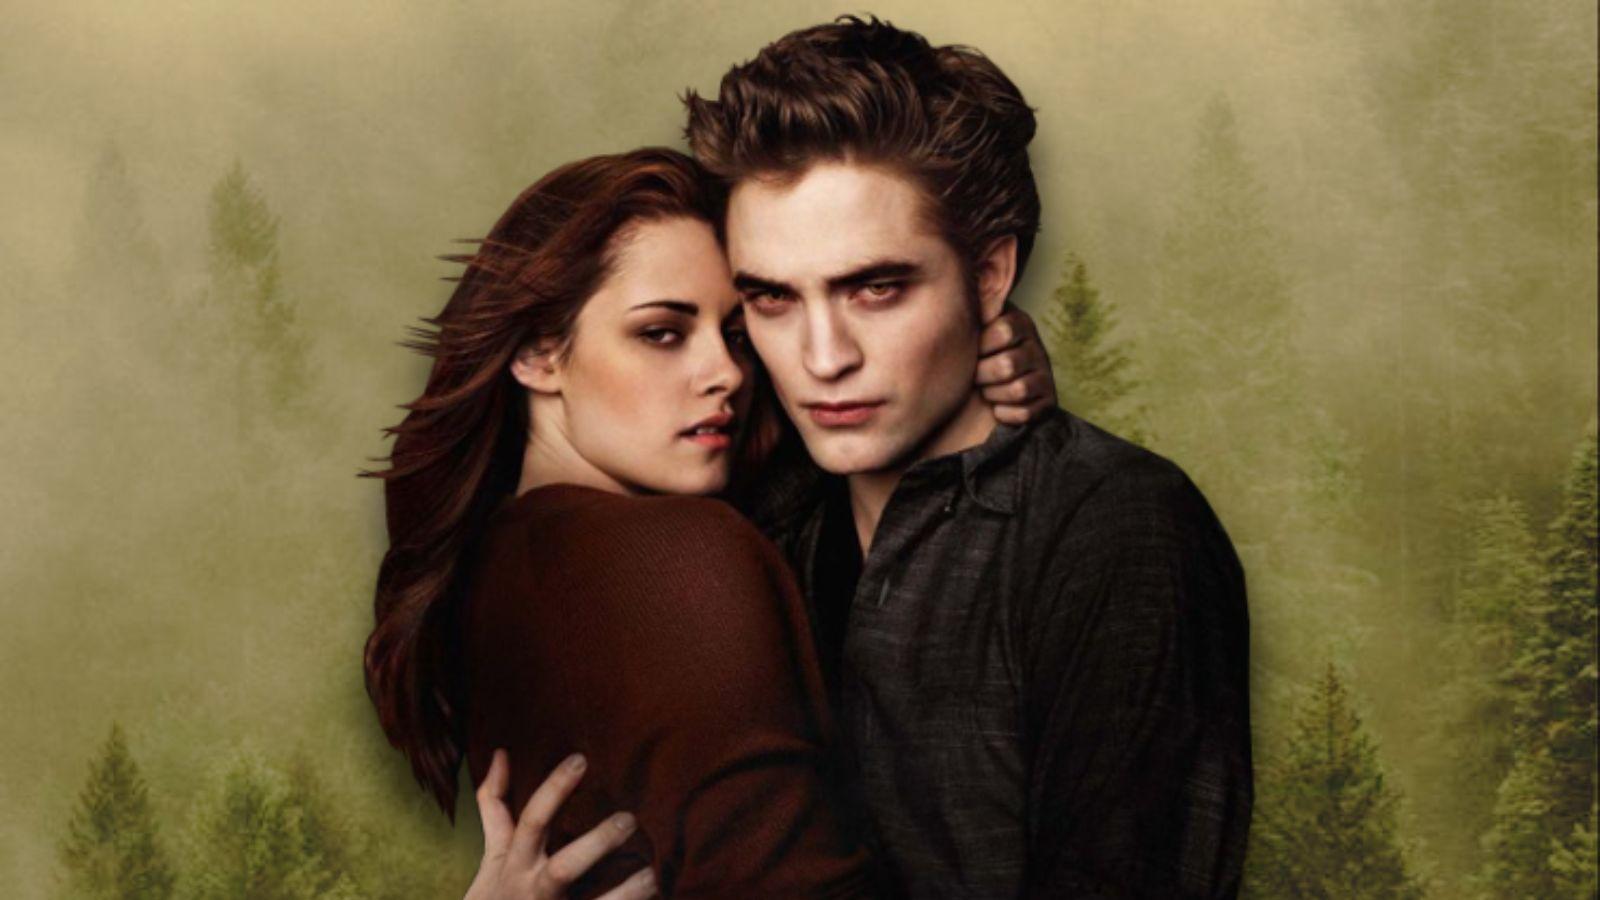 Robert Pattinson and Kristen Stewart in Twilight.